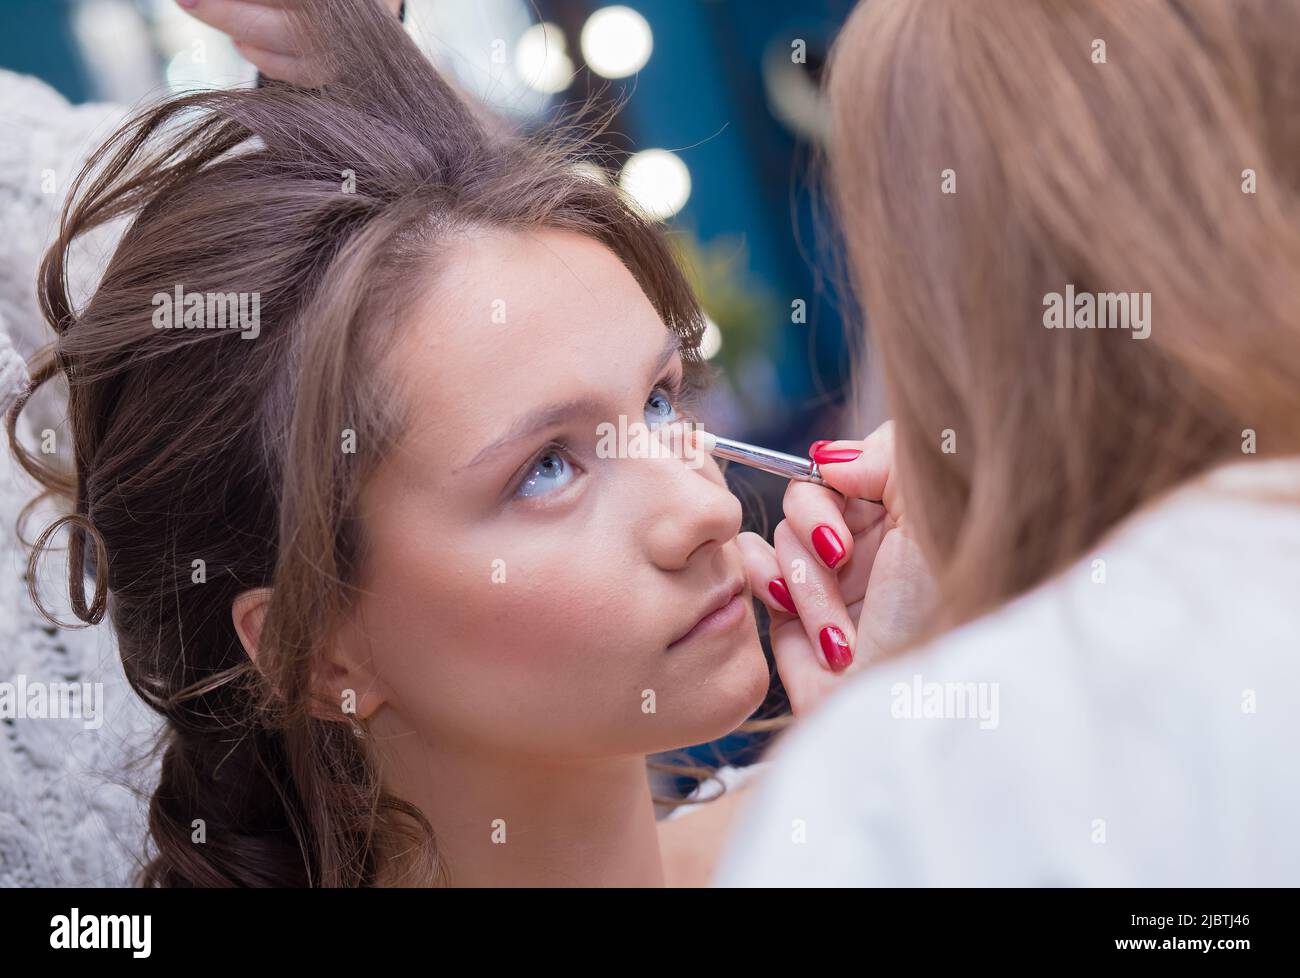 Ein professioneller Make-up-Künstler malt das Auge eines Kunden mit einem Pinsel. Weibliche Meisterin macht einer jungen Frau Make-up. Geschäftskonzept - Schönheitssalon, Gesichtshautpflege, Kosmetik. Stockfoto